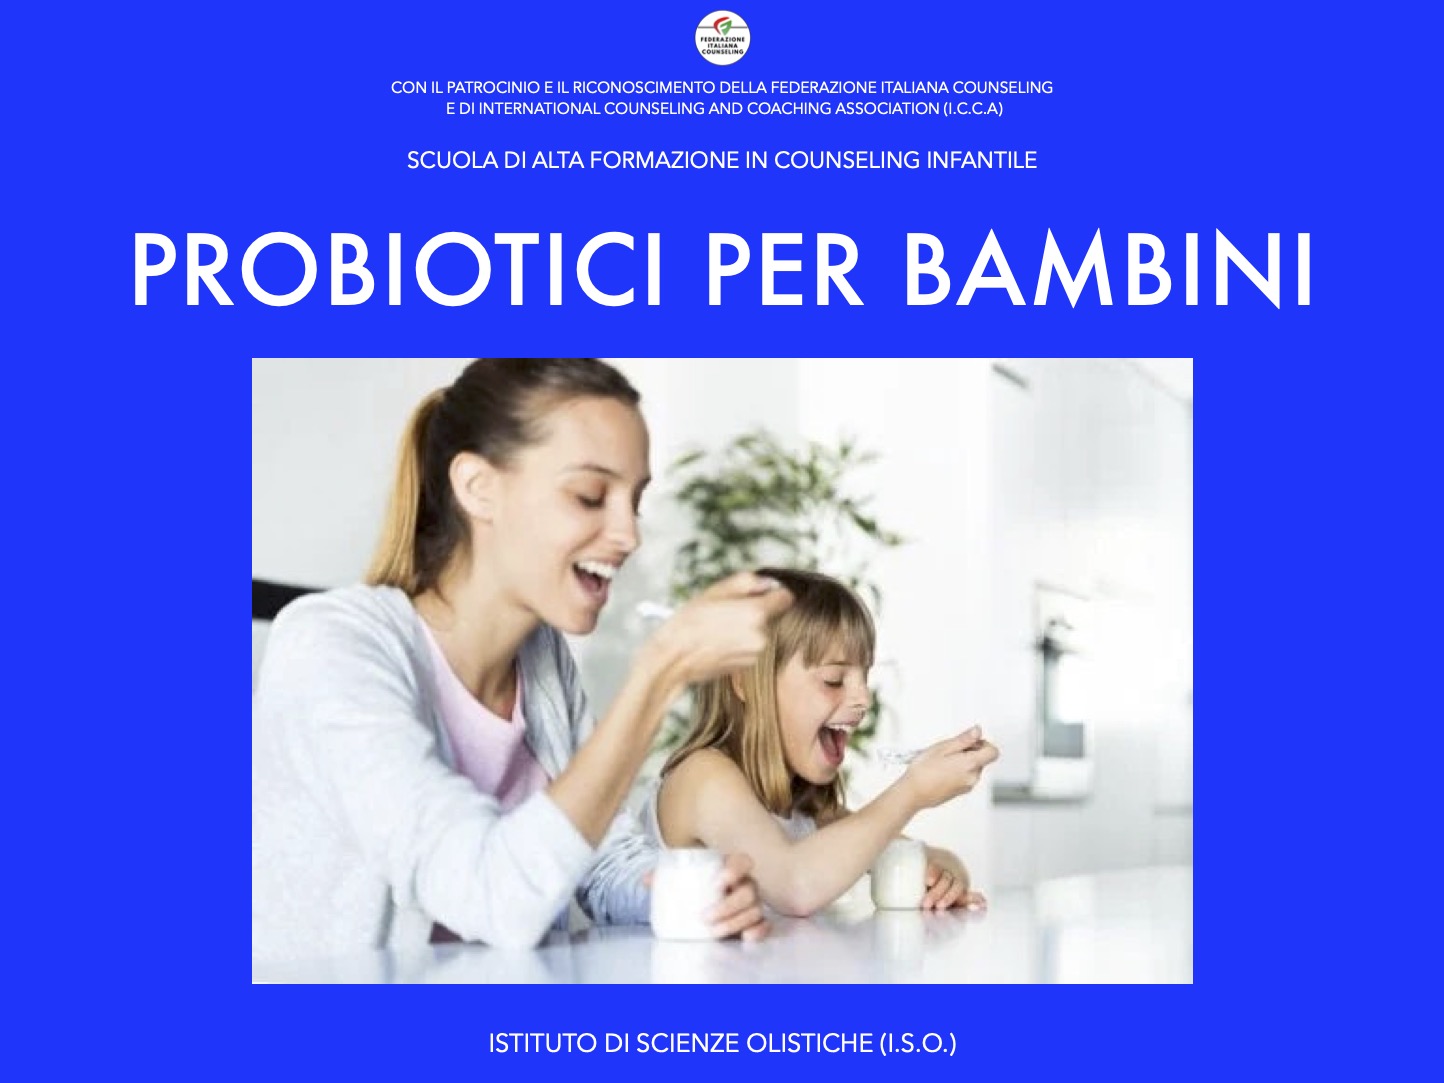 Probiotici per bambini